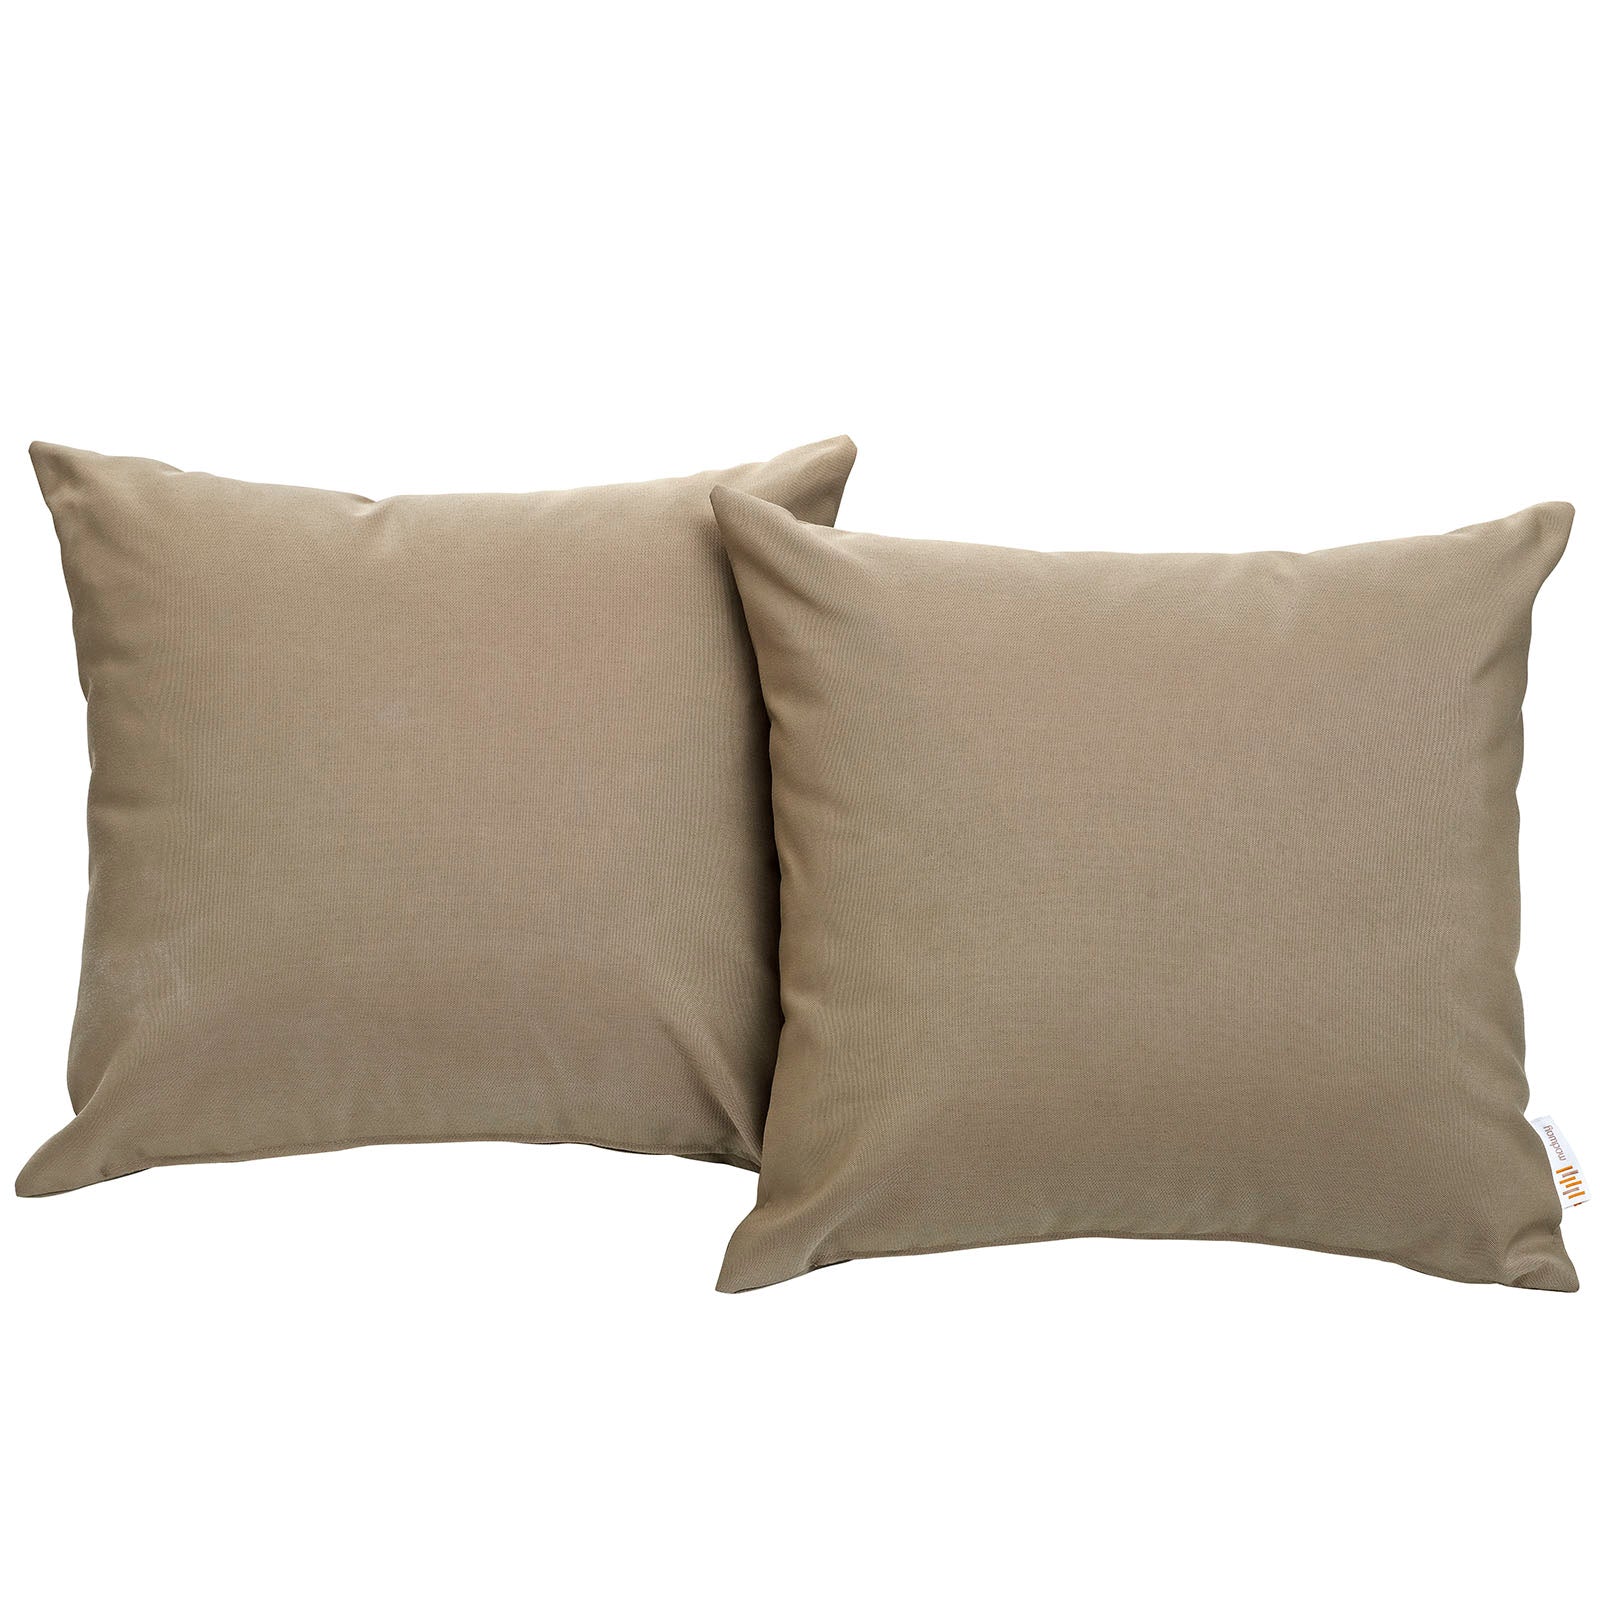 Modway Outdoor Pillows & Cushions - Convene Outdoor Patio Pillow Mocha (Set of 2)